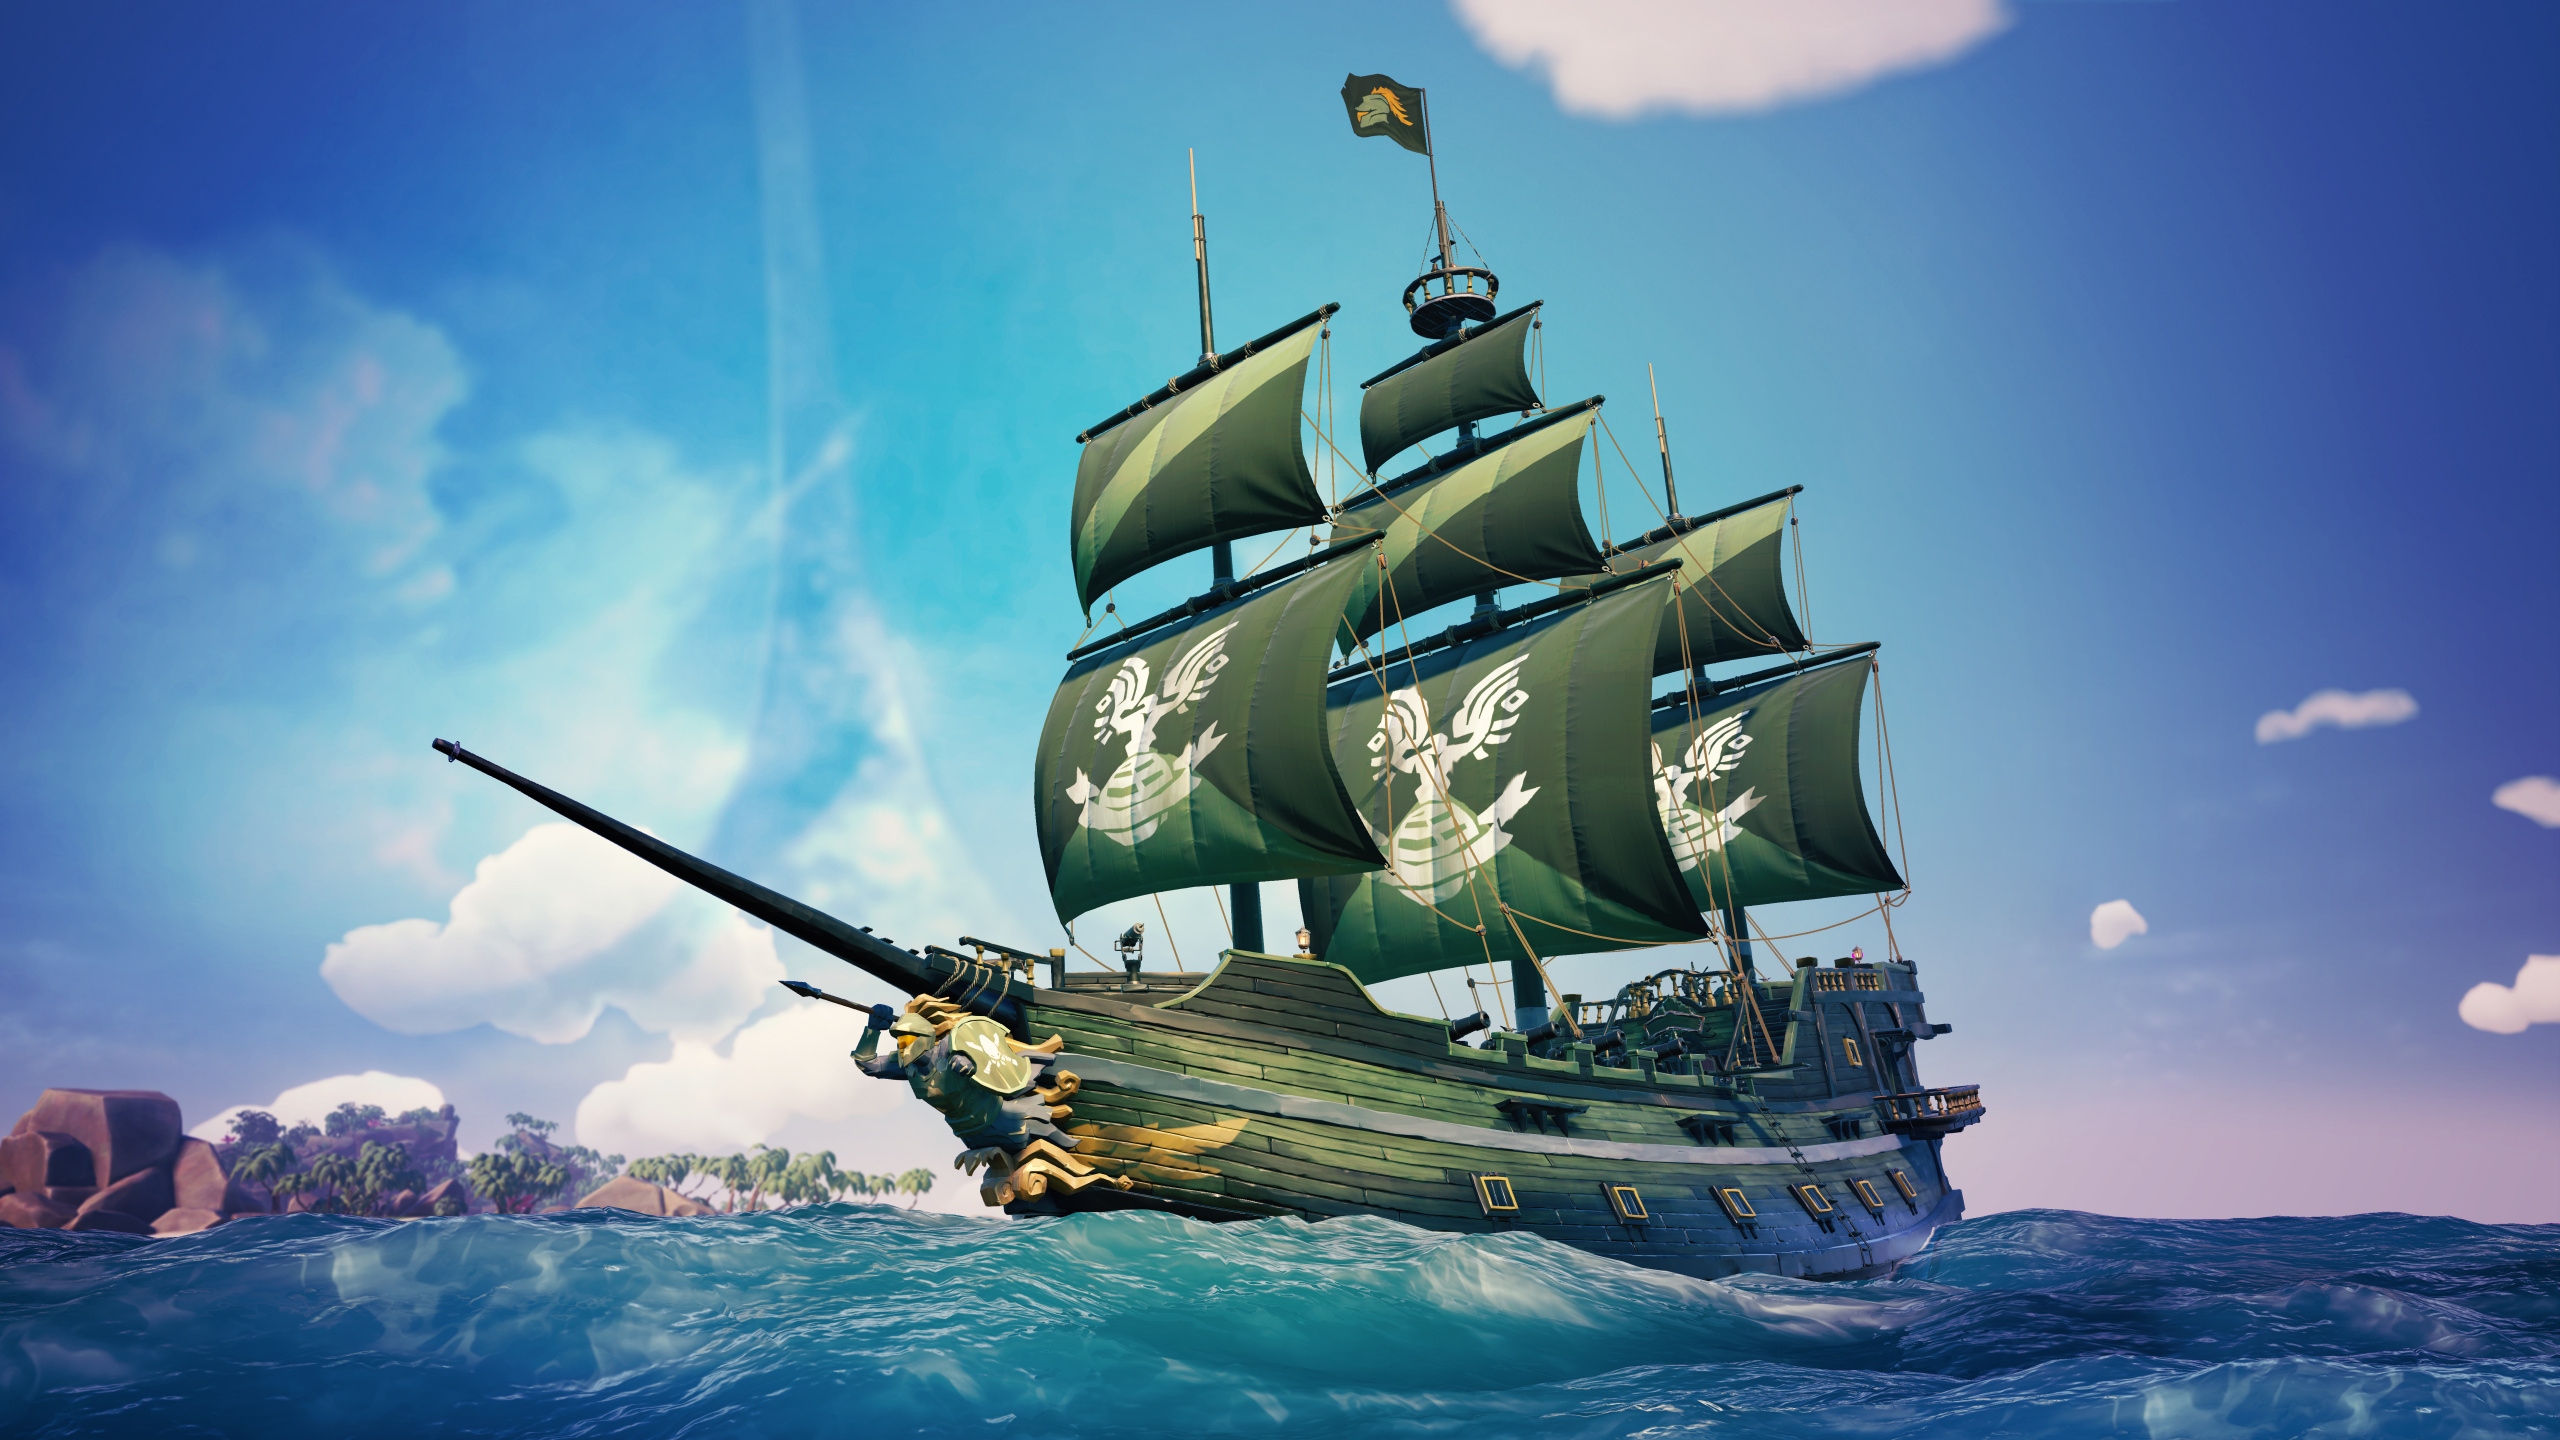 Xbox游戏室, 马尼拉大帆船, 船只, Fluyt, 旗舰 壁纸 2560x1440 允许